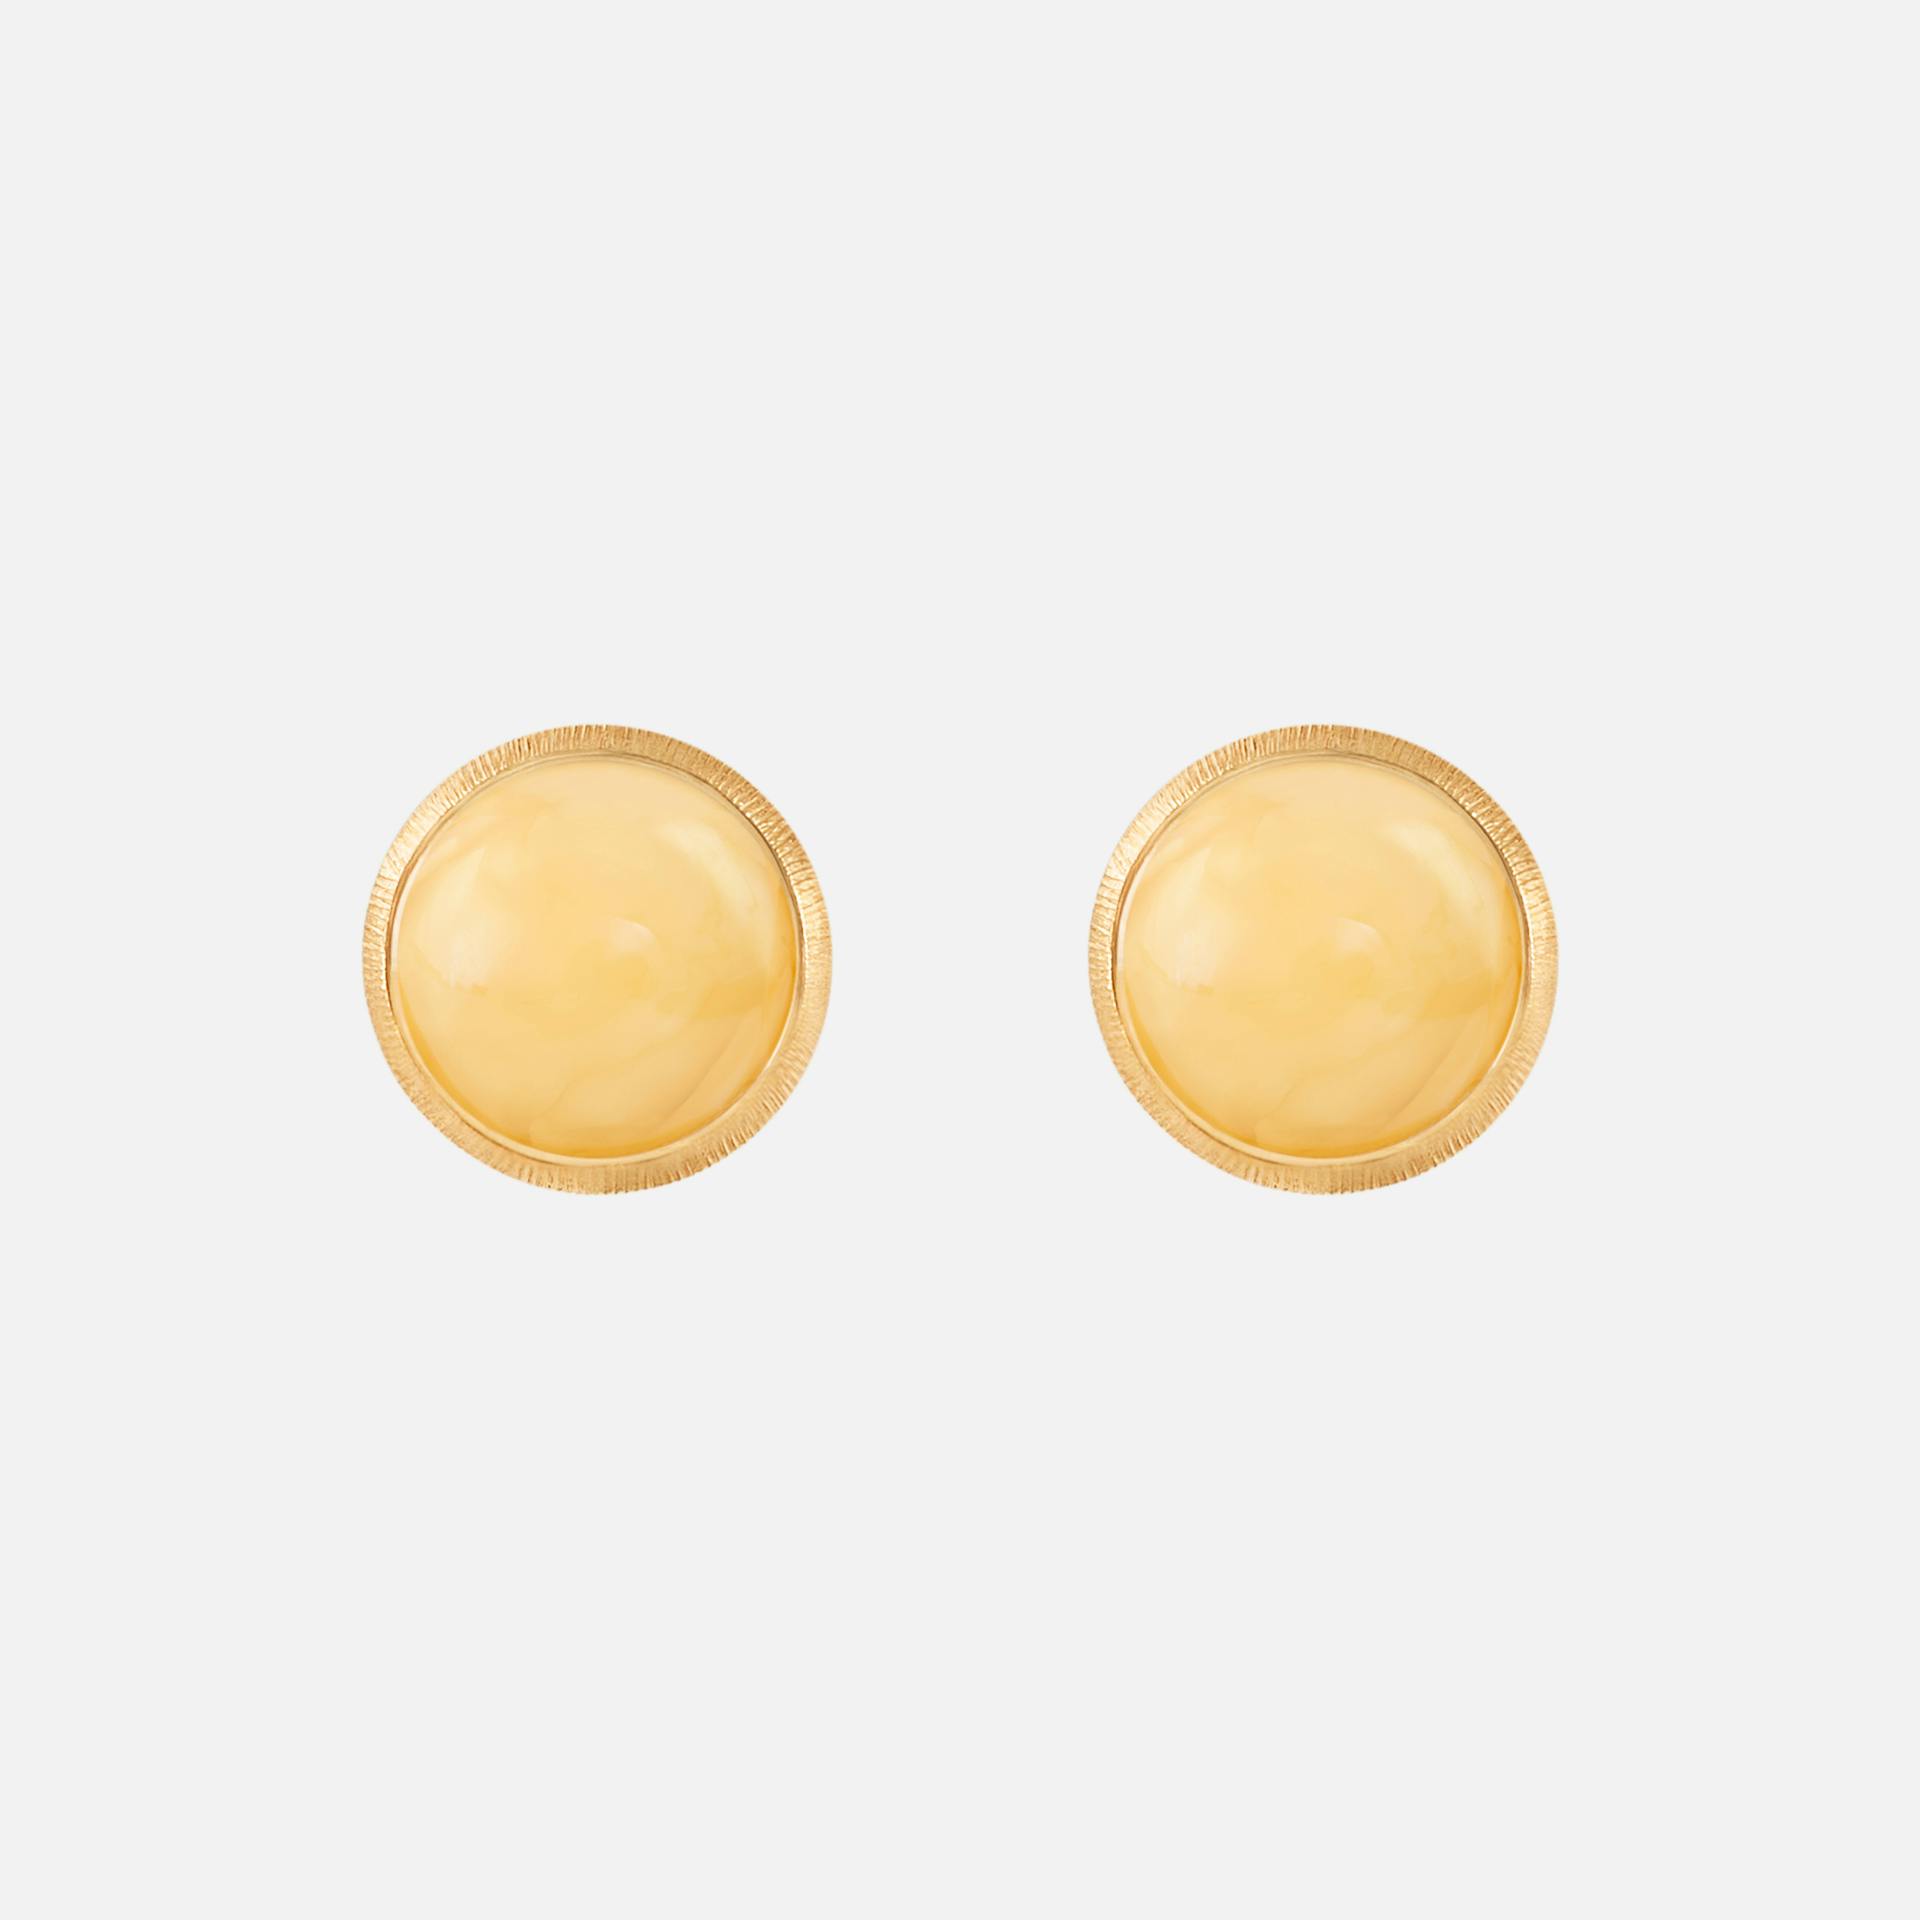 Lotus Stud Earrings in 18 Karat Gold with Amber  |  Ole Lynggaard Copenhagen 